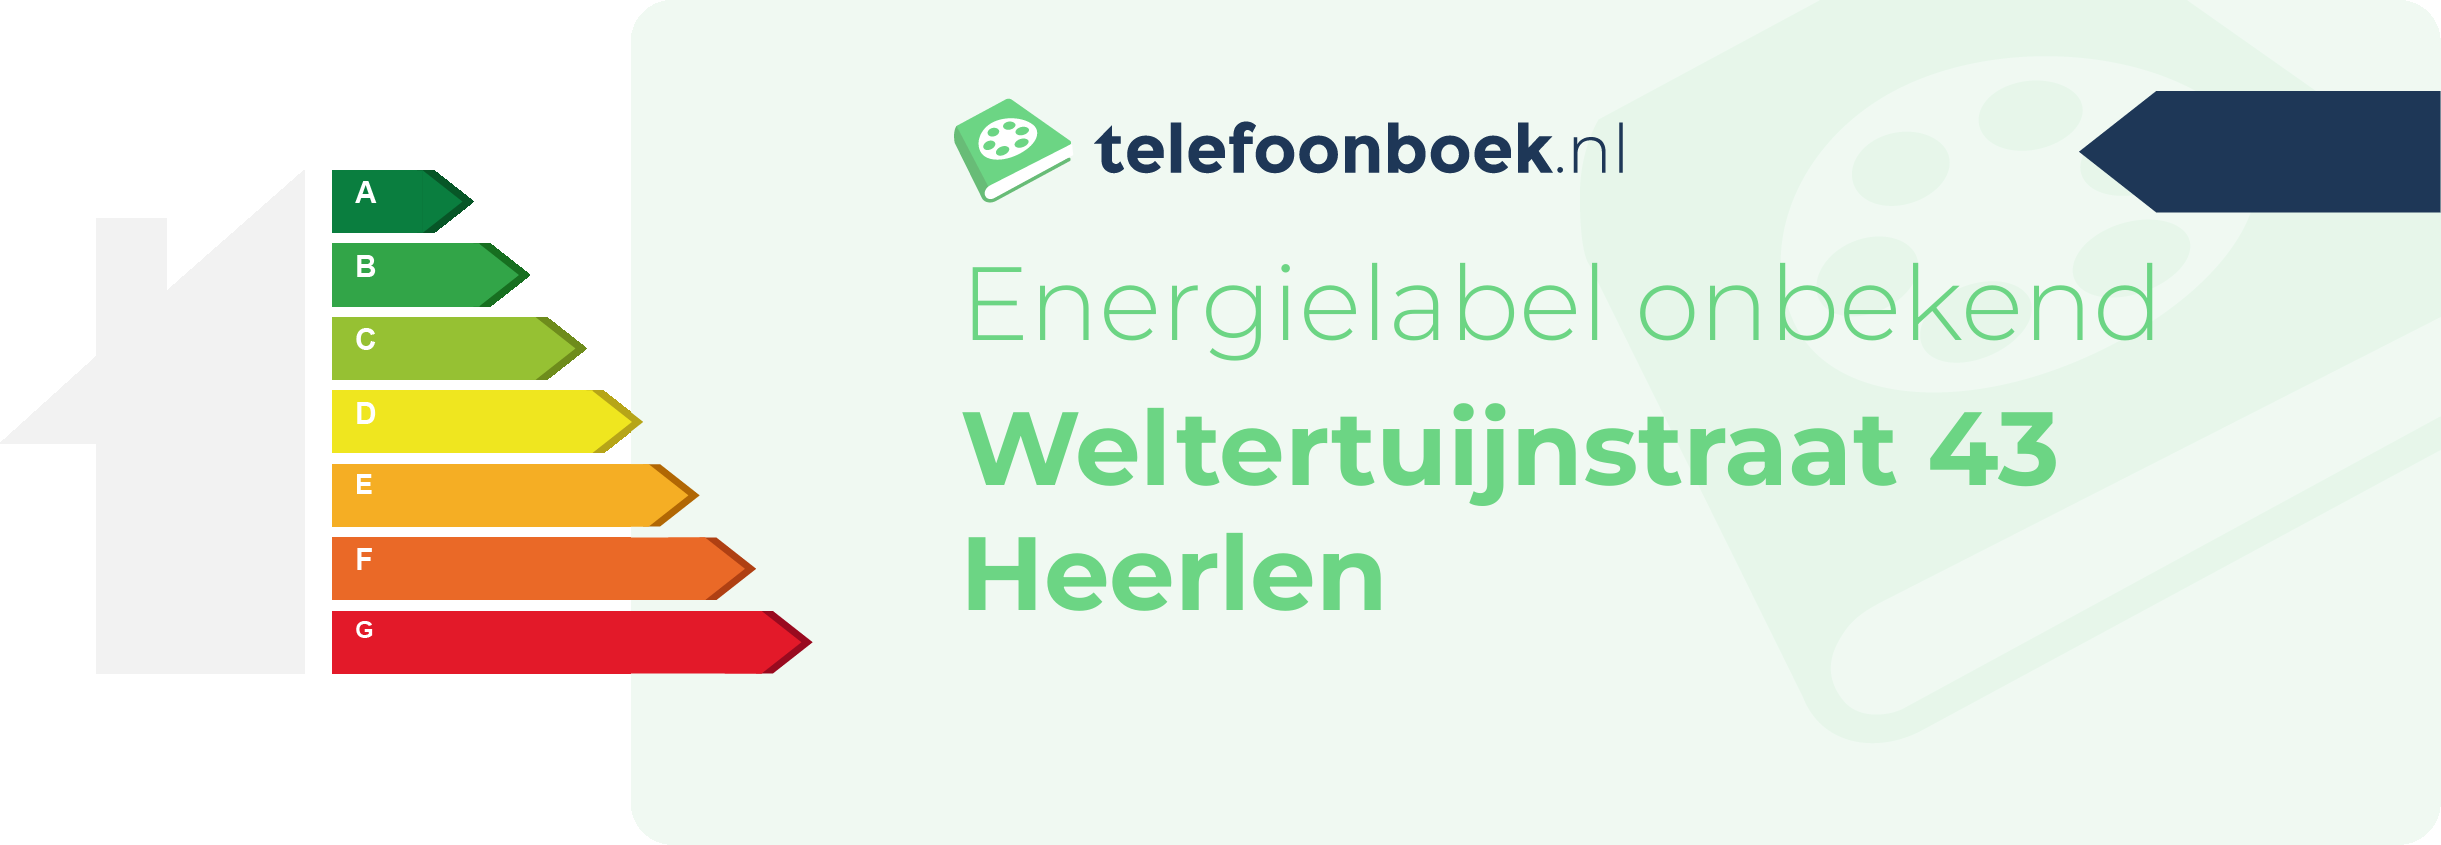 Energielabel Weltertuijnstraat 43 Heerlen